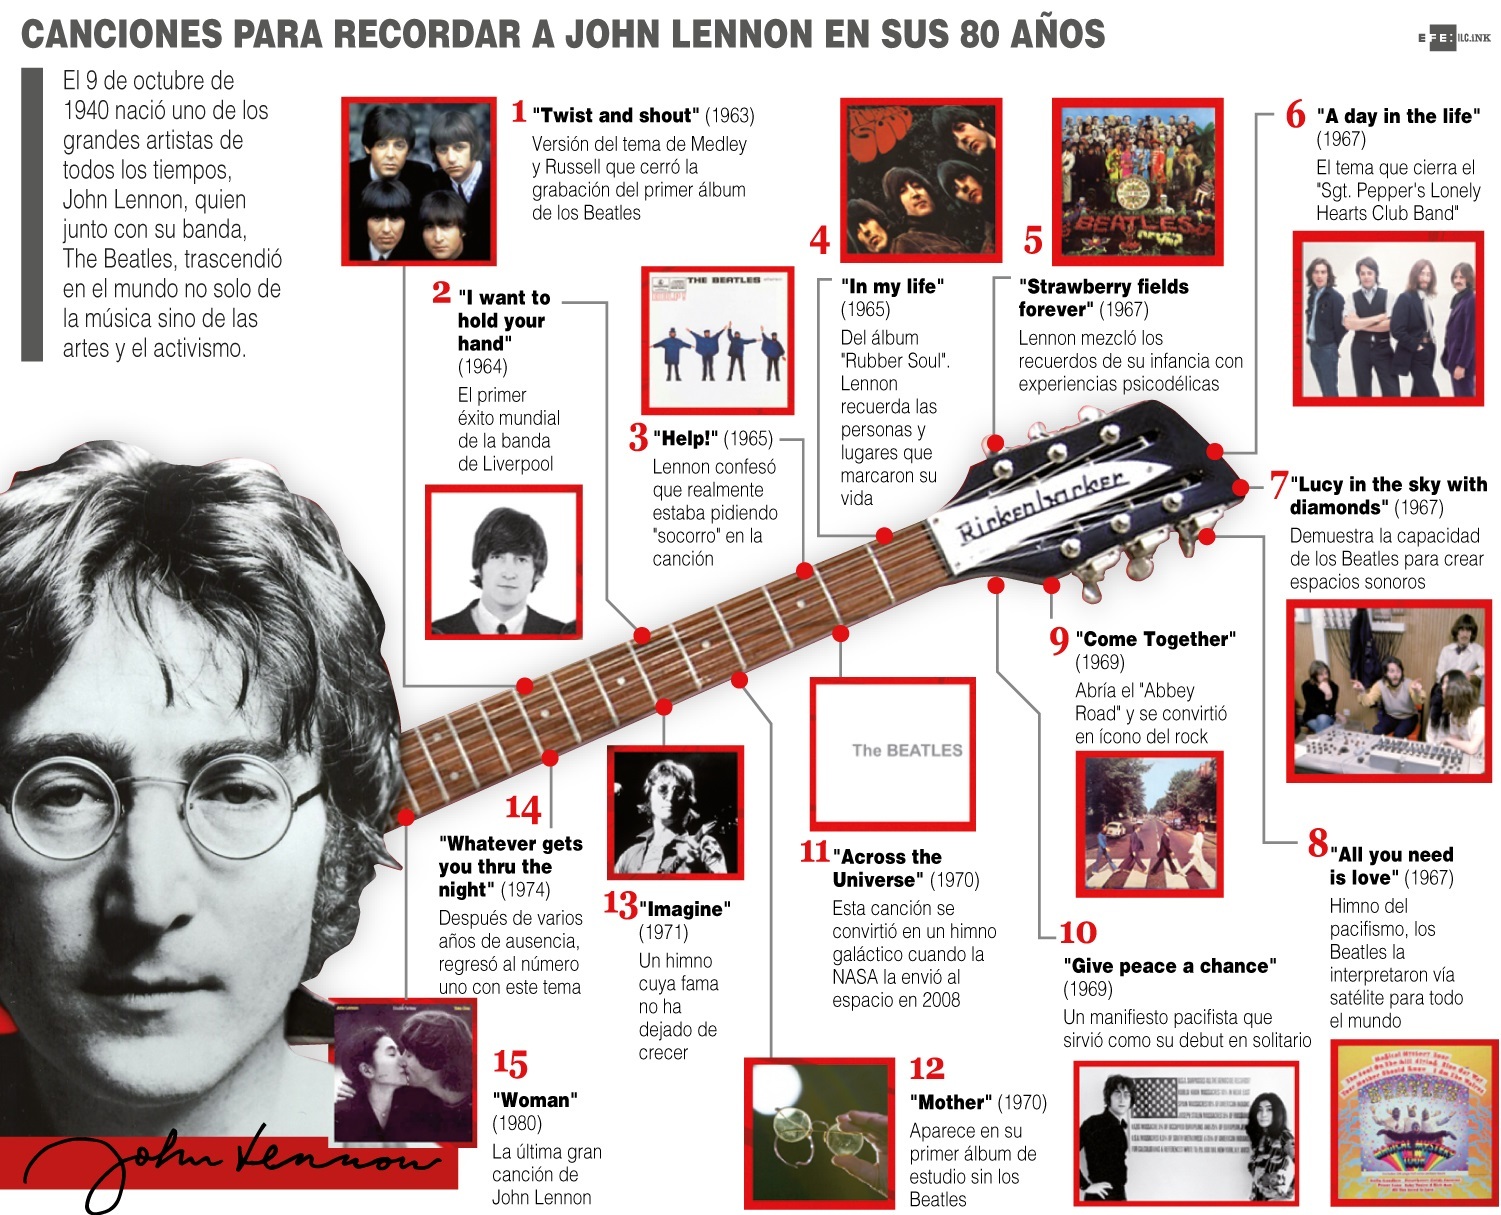 Canciones para recordar a John Lennon en sus 80 años